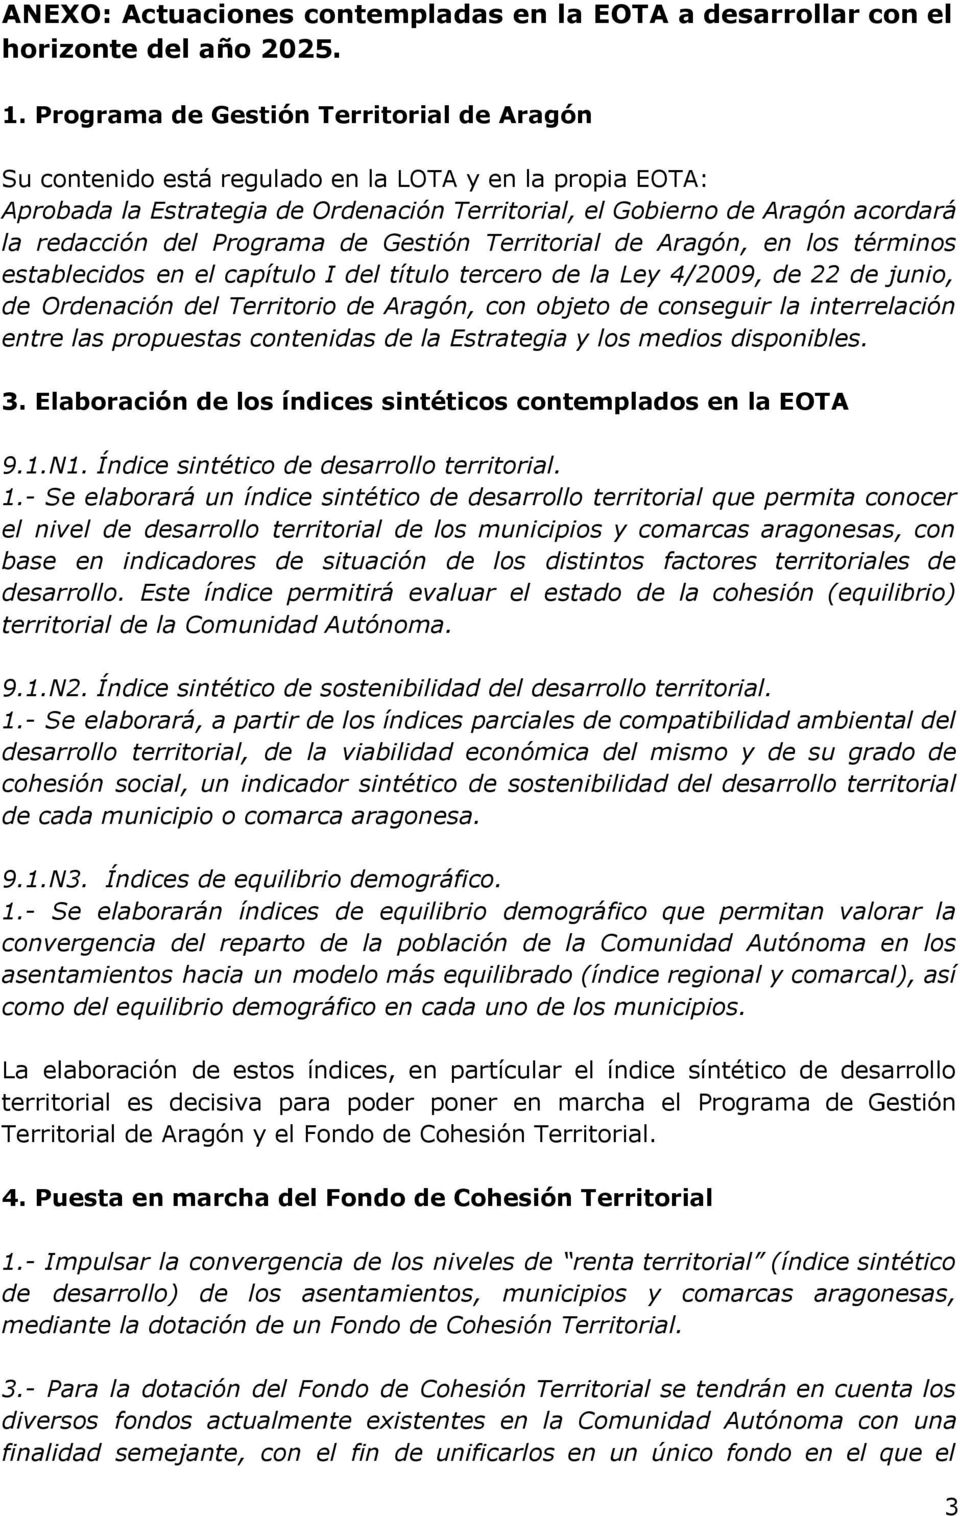 Programa de Gestión Territorial de Aragón, en los términos establecidos en el capítulo I del título tercero de la Ley 4/2009, de 22 de junio, de Ordenación del Territorio de Aragón, con objeto de